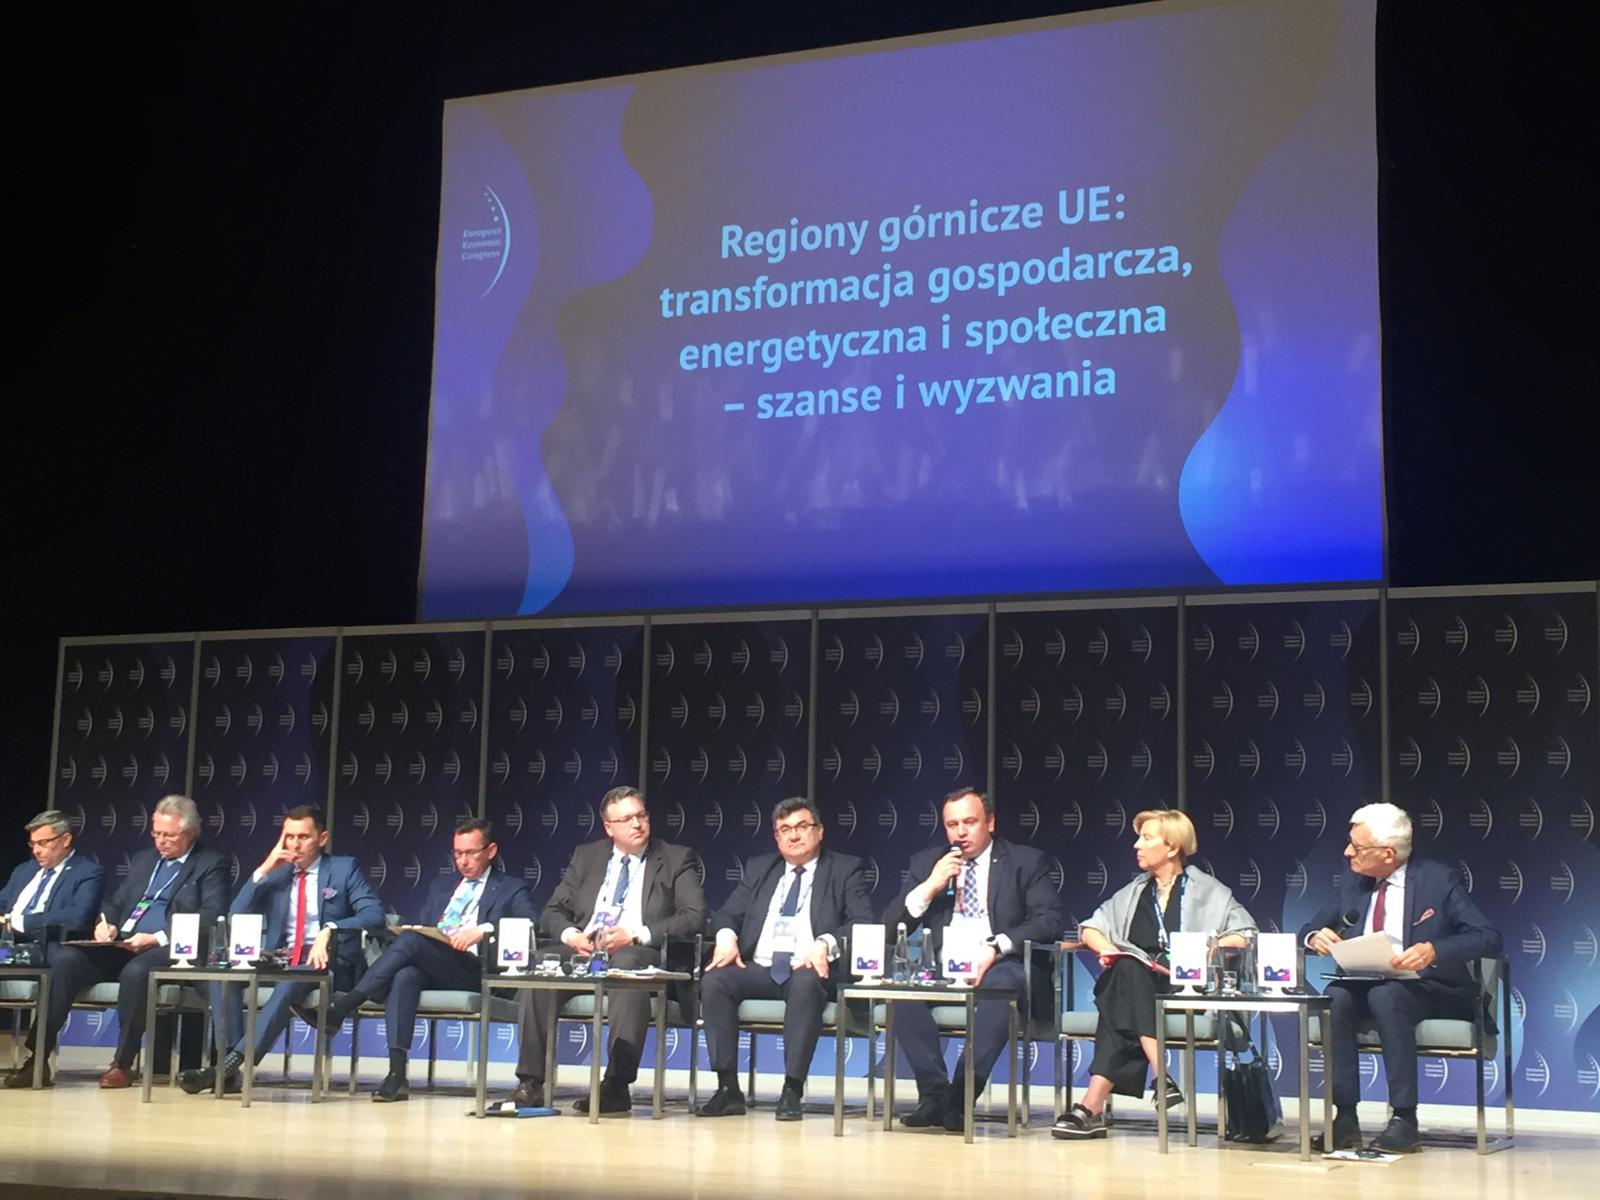 Panel "Regiony górnicze UE: transformacja gospodarcza, energetyczna i społeczna – szanse i wyzwania" podczas EKG 2019 fot. BiznesAlert.pl